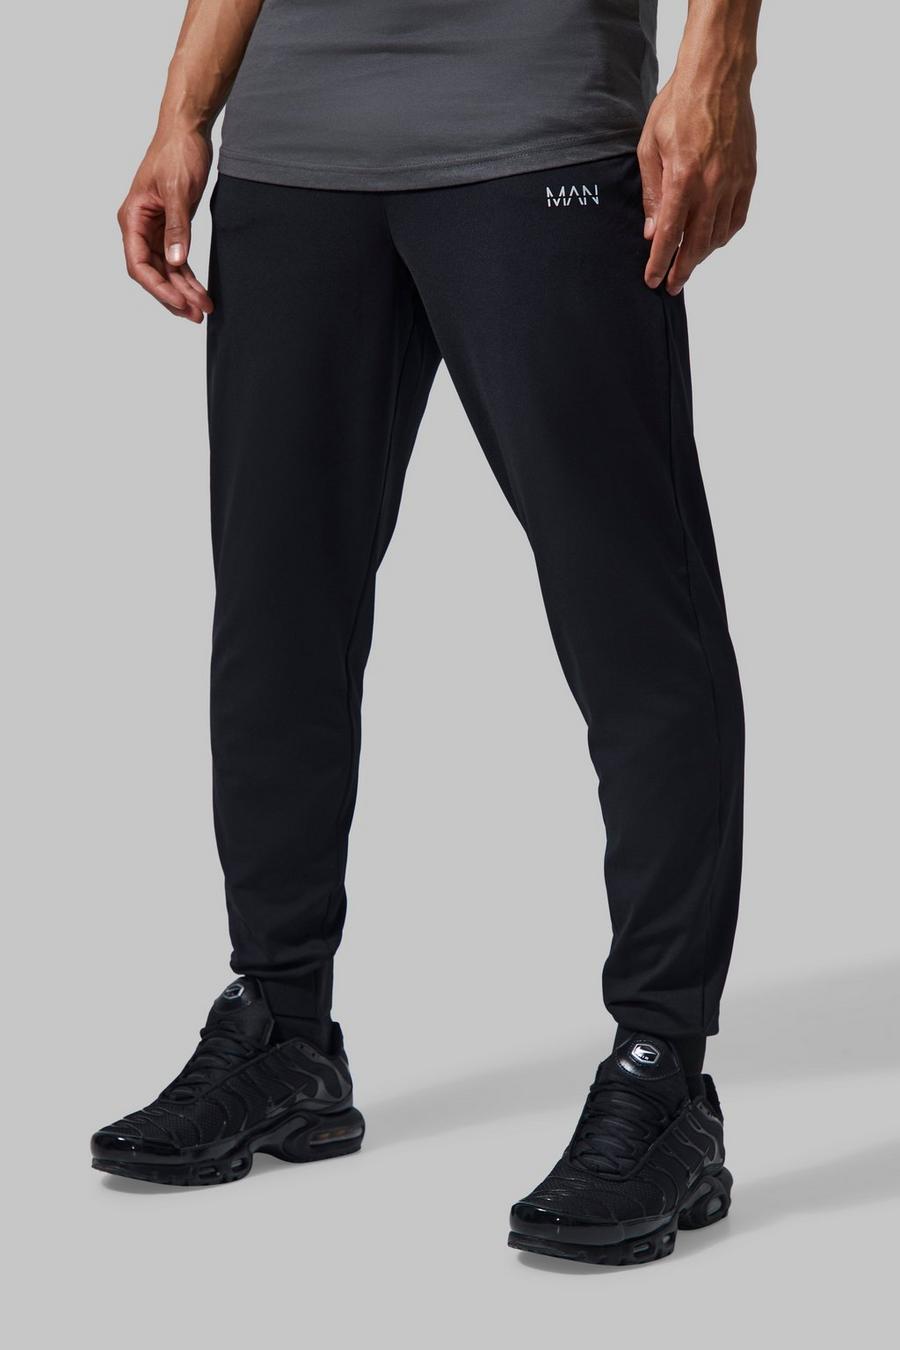 Pantalón deportivo MAN Active para el gimnasio con cintura fija, Black negro